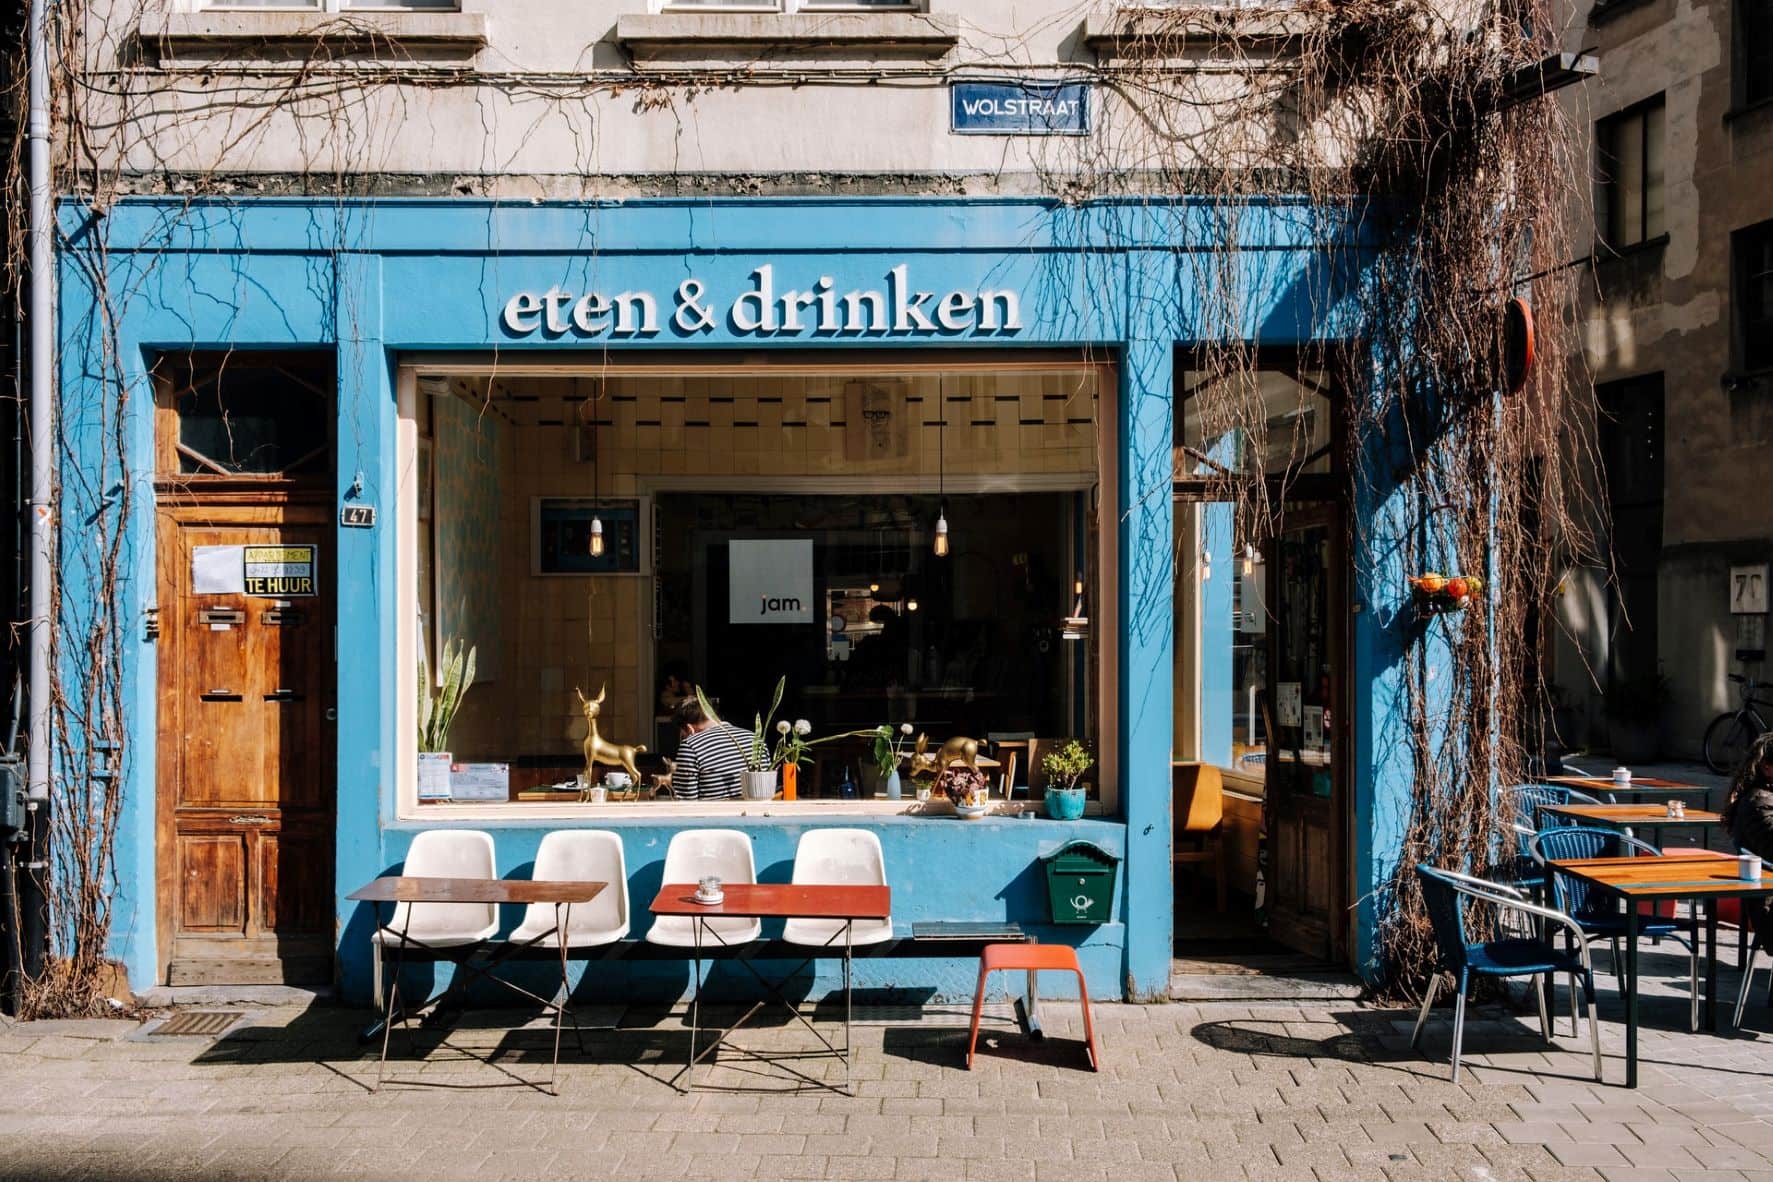 Cafe eten&drinken in Antwerpen 